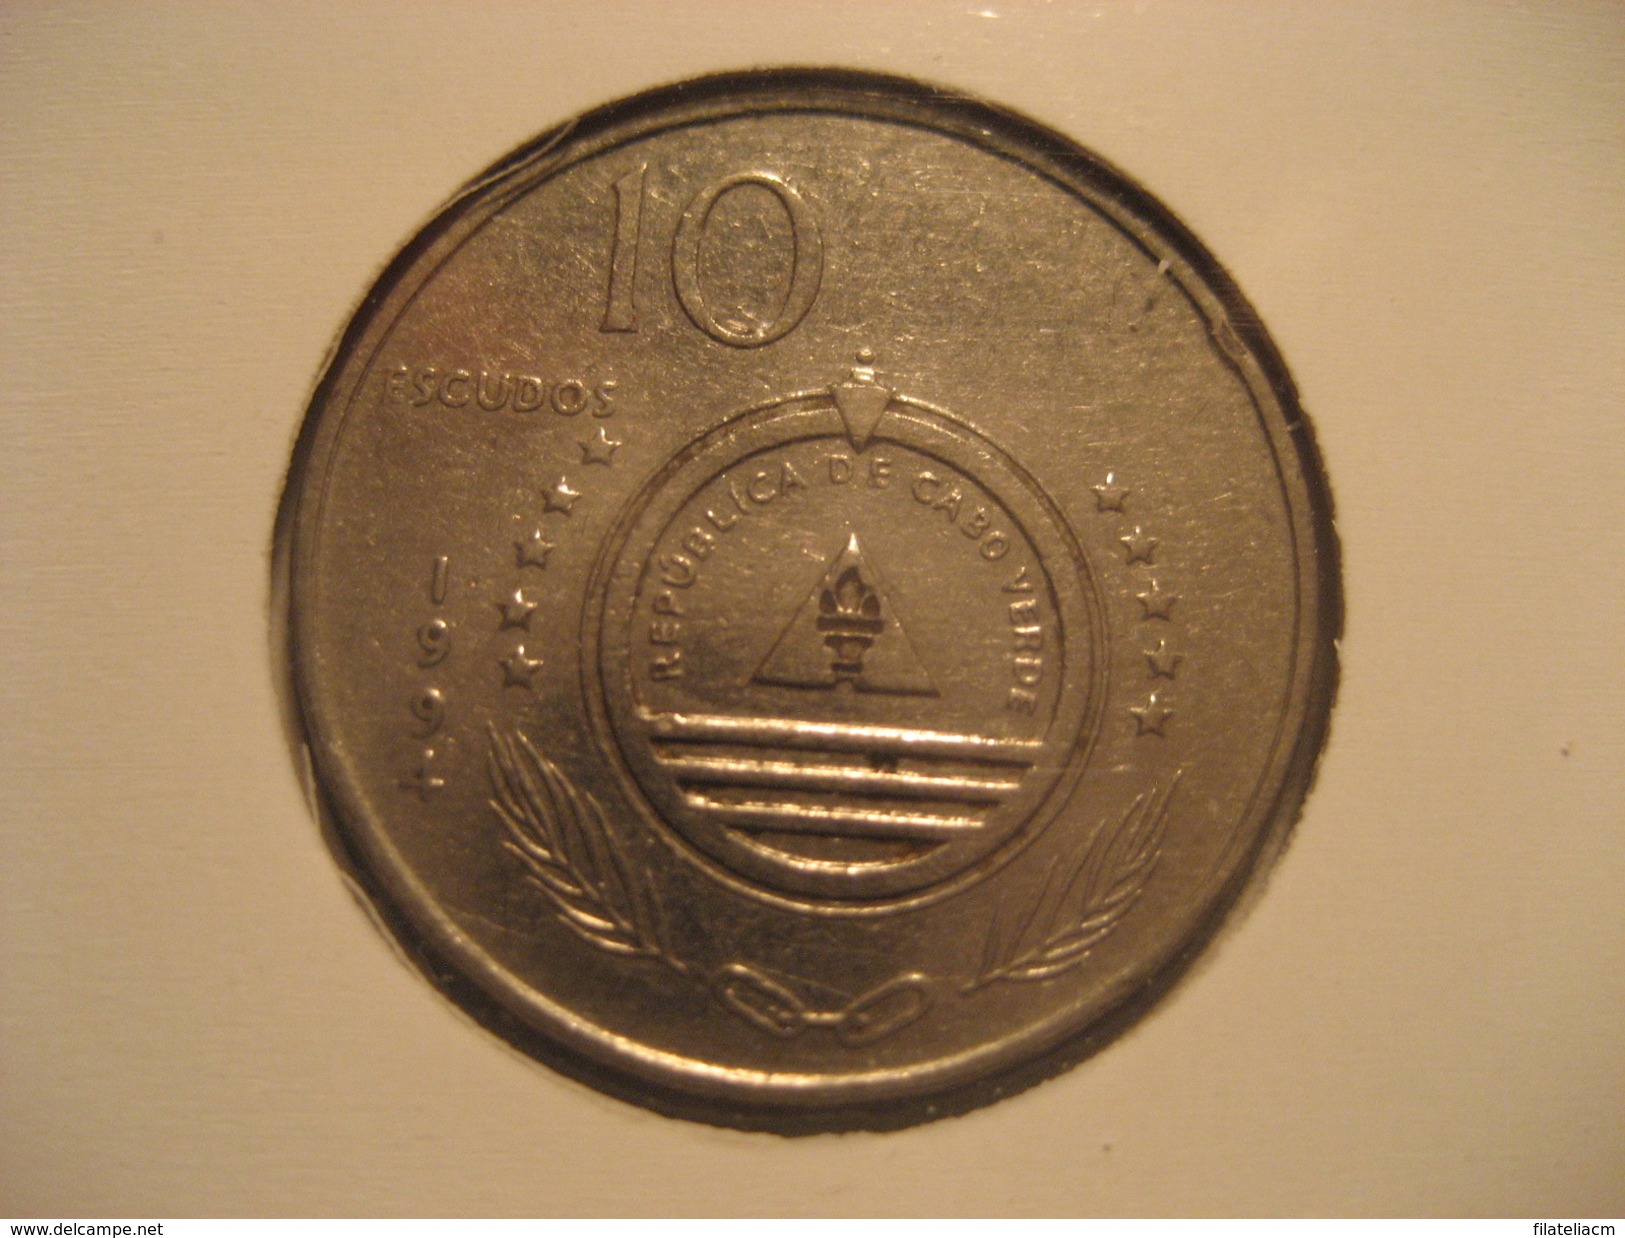 10 Escudos 1994 CAPE VERDE Coin Cap-Vert Cabo Verde - Cap Verde